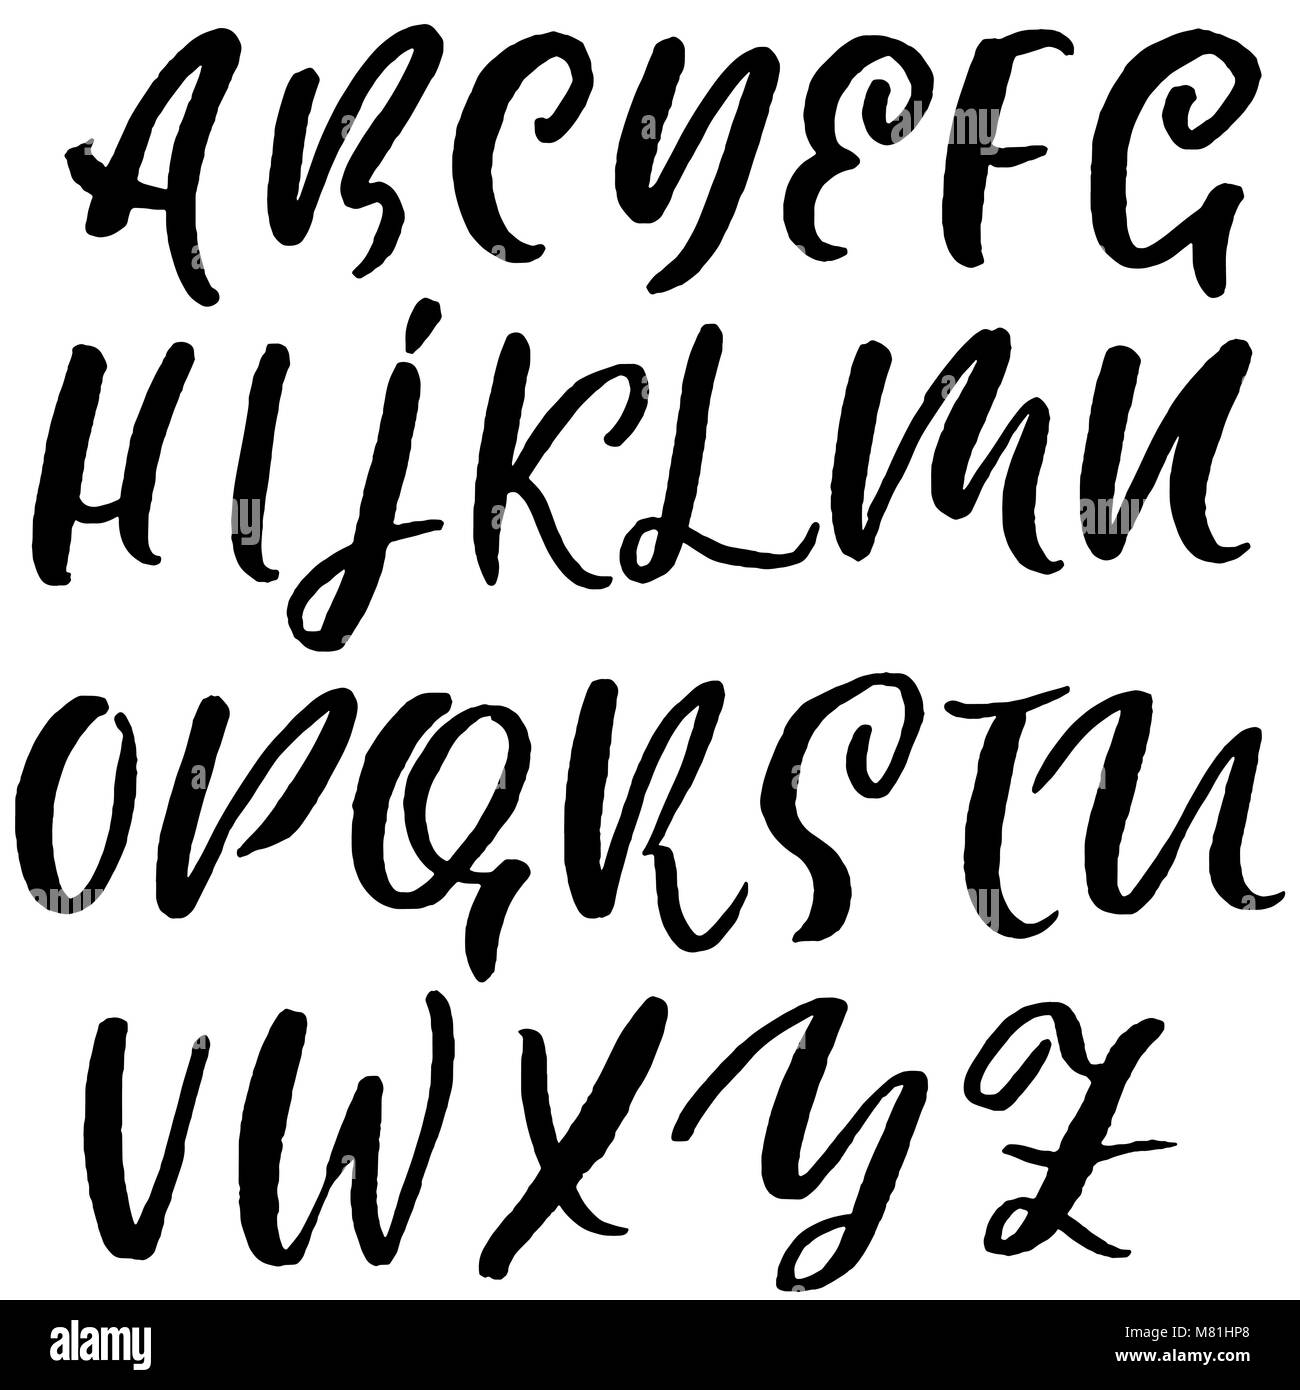 Handdrawn dry brush font. Modern brush lettering. Grunge style alphabet ...